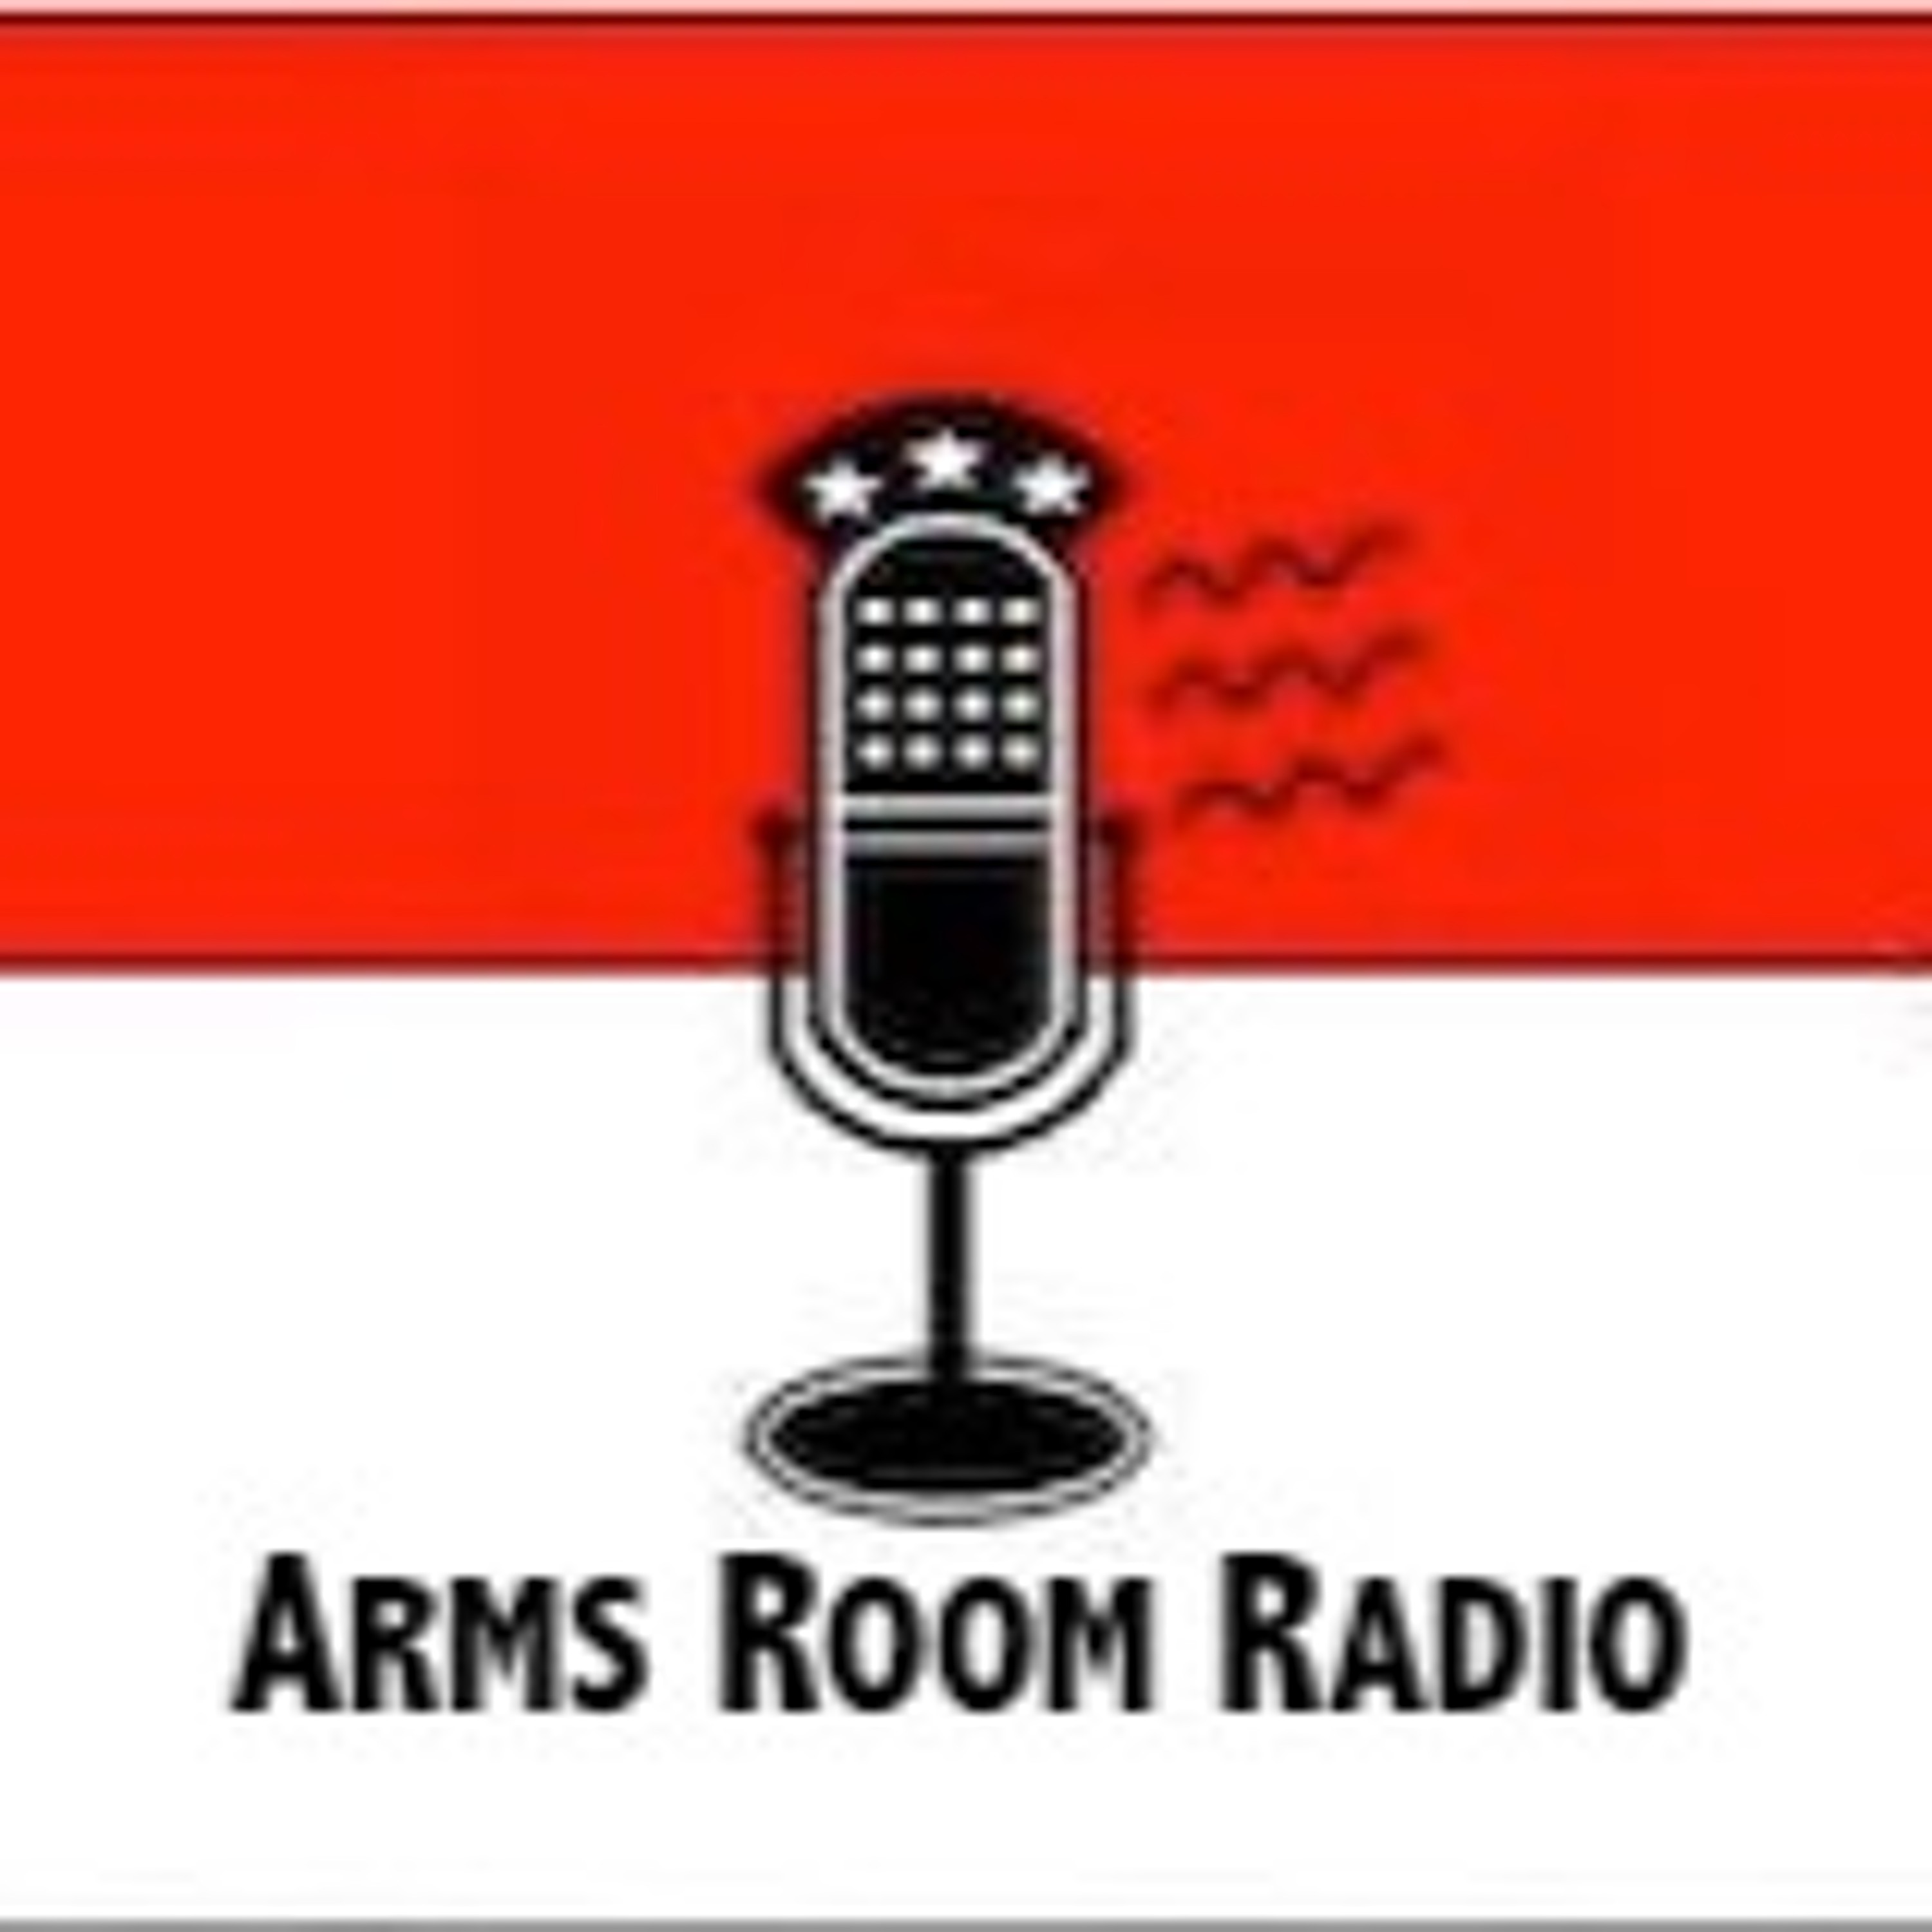 ArmsRoomRadio 02.06.21  Mark Walters, and bathroom etiquette